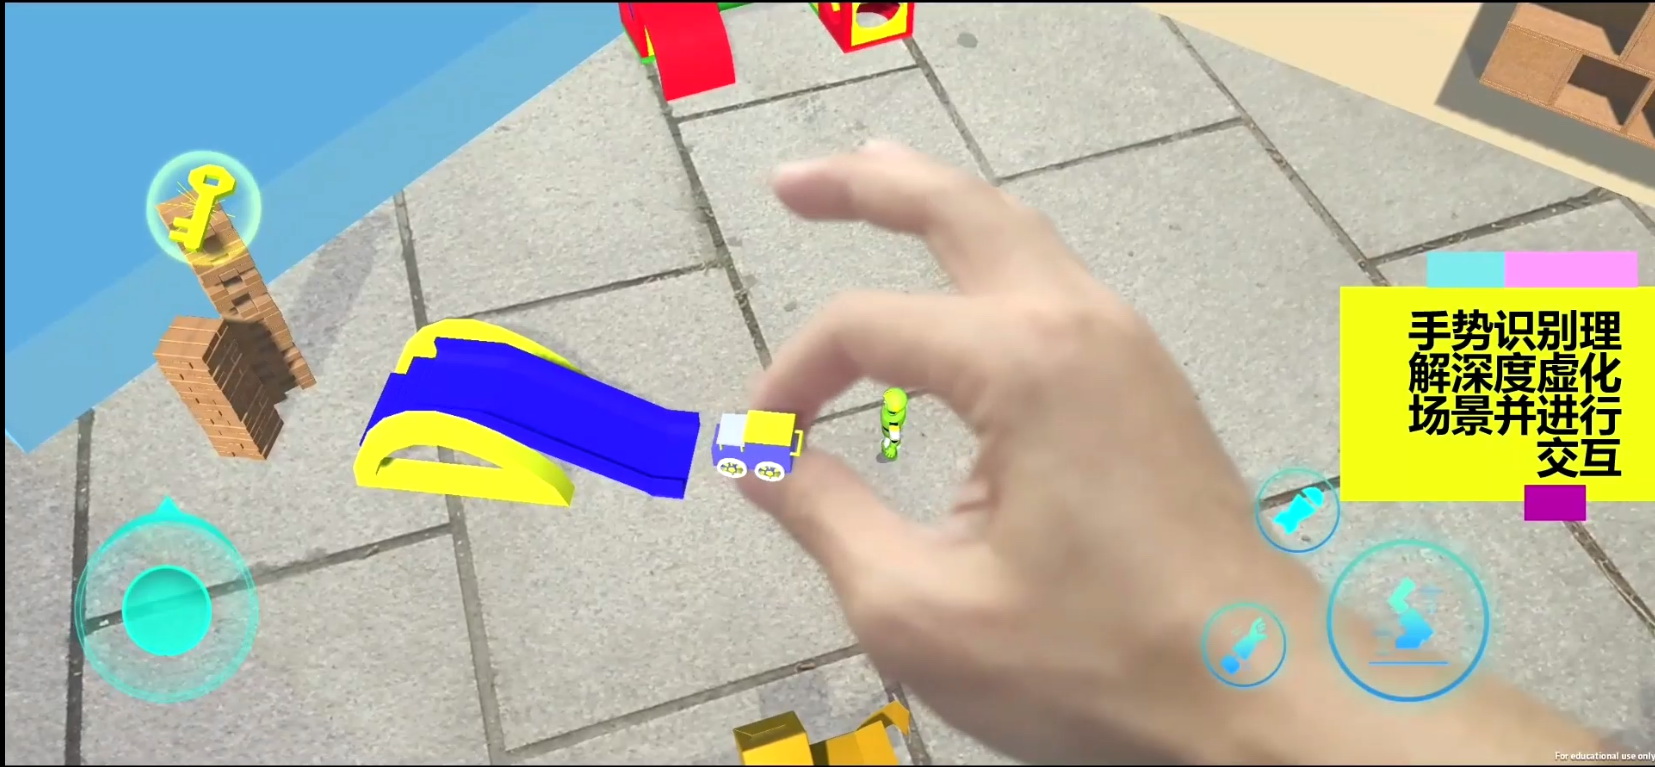 虚拟现实与游戏竞赛作品——玩具迷城